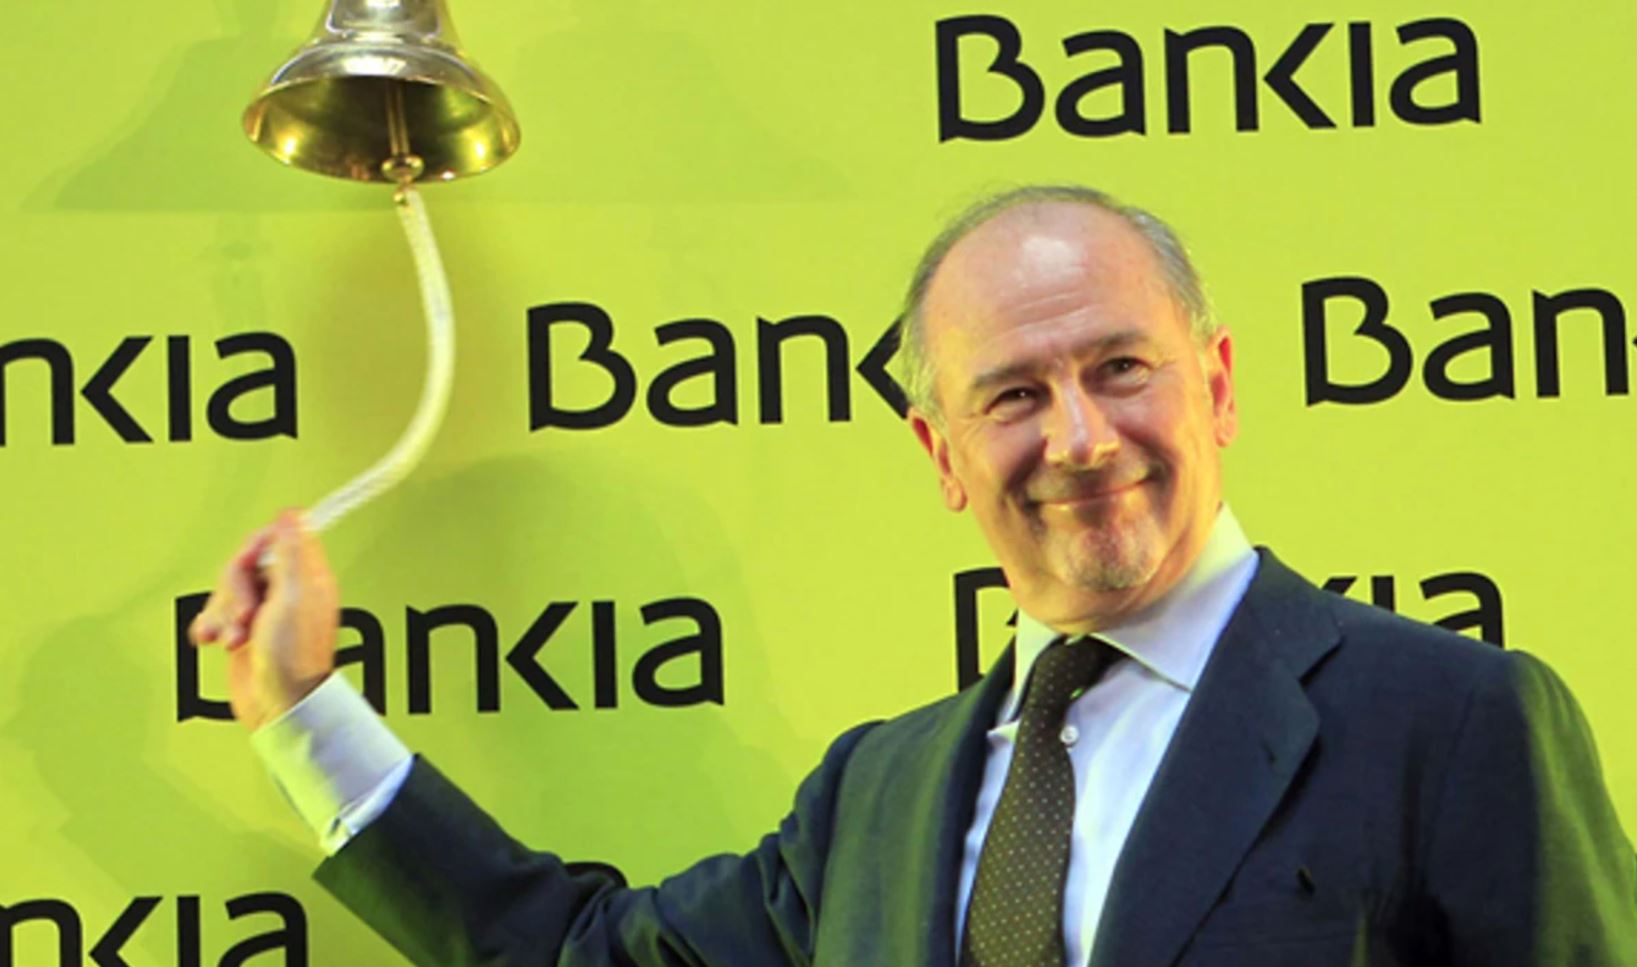 Una de les imatges del llibre sobre el poder econòmic: Rodrigo Rato fa sonar la campana per simbolitzar la sortida a borsa de Bankia 